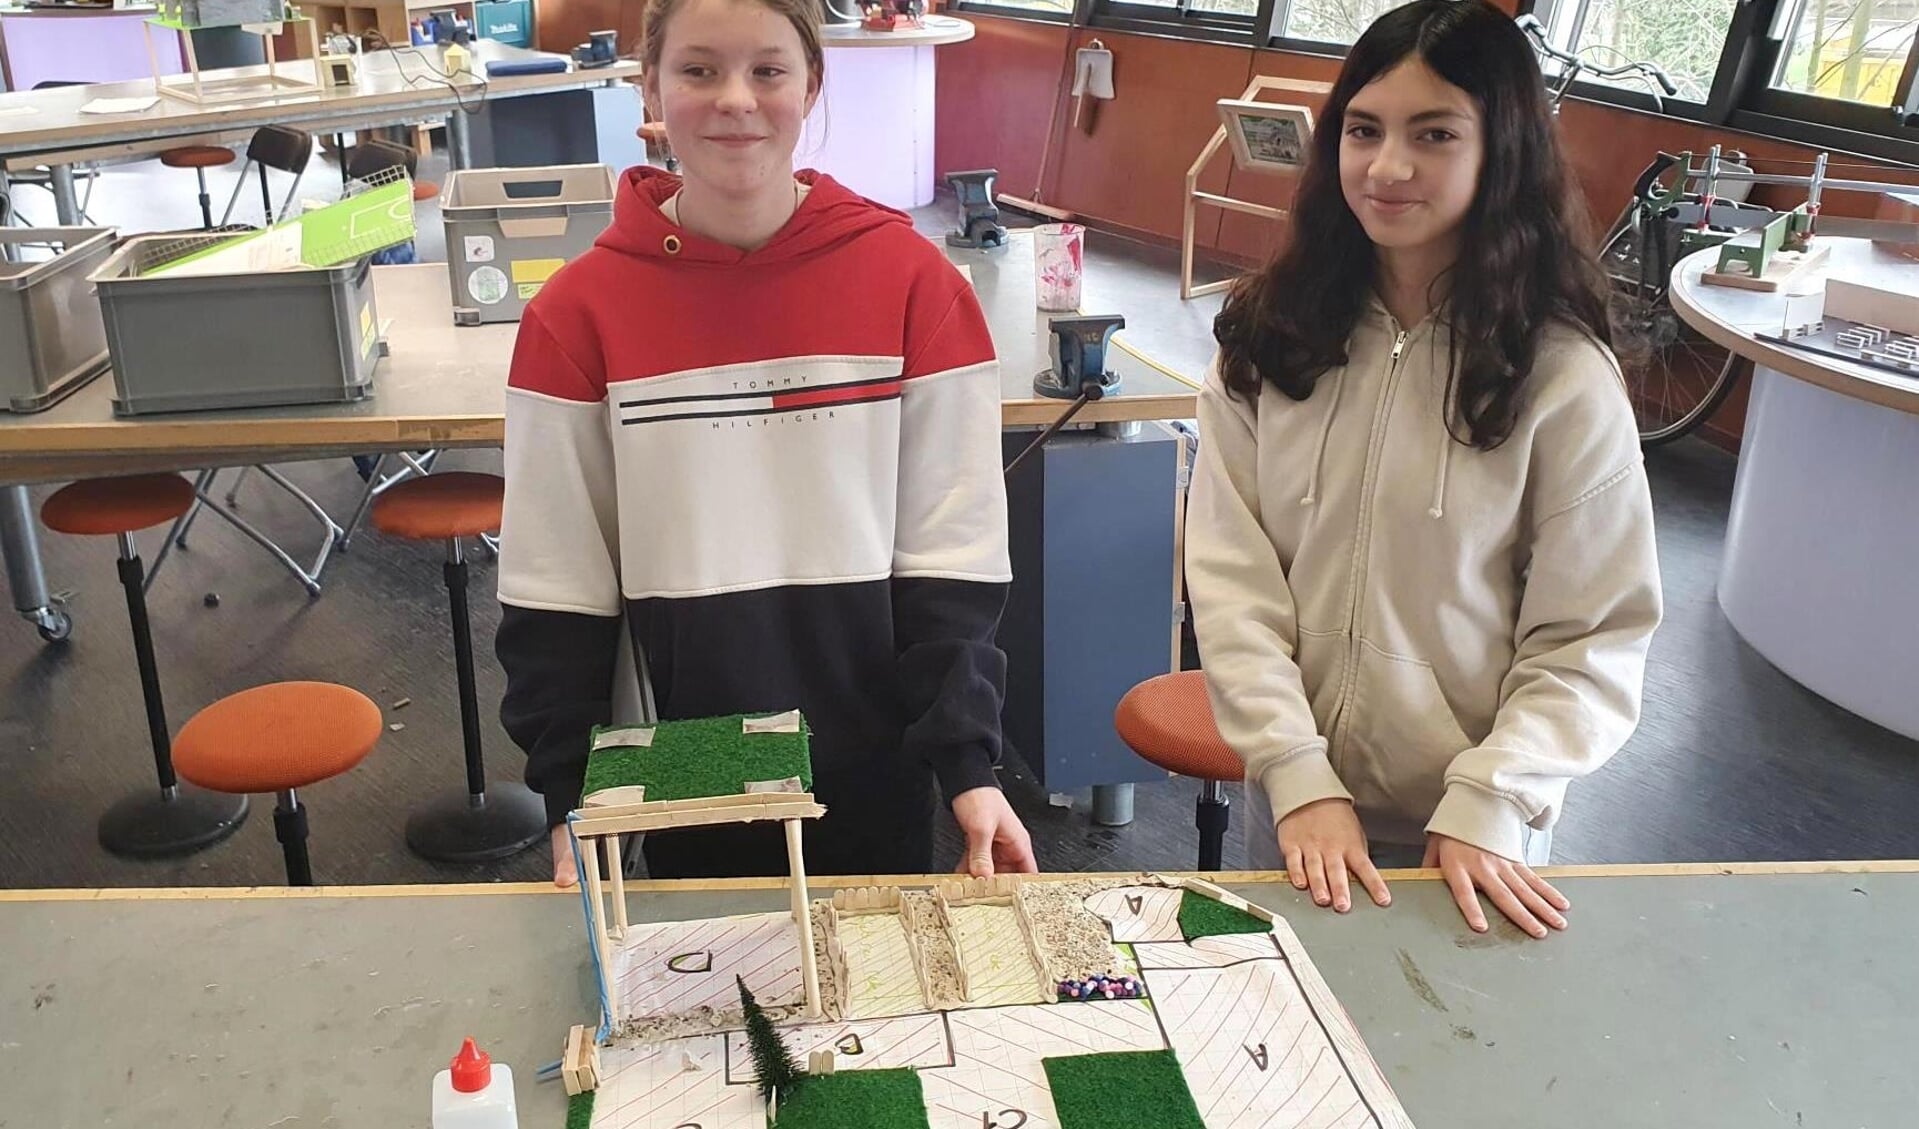 Technasiumleerlingen Madelon (links) en Lamia (rechts) tonen trots de maquette van hun klimaatbestendige schoolplein voor scholengemeenschap Spieringshoek.